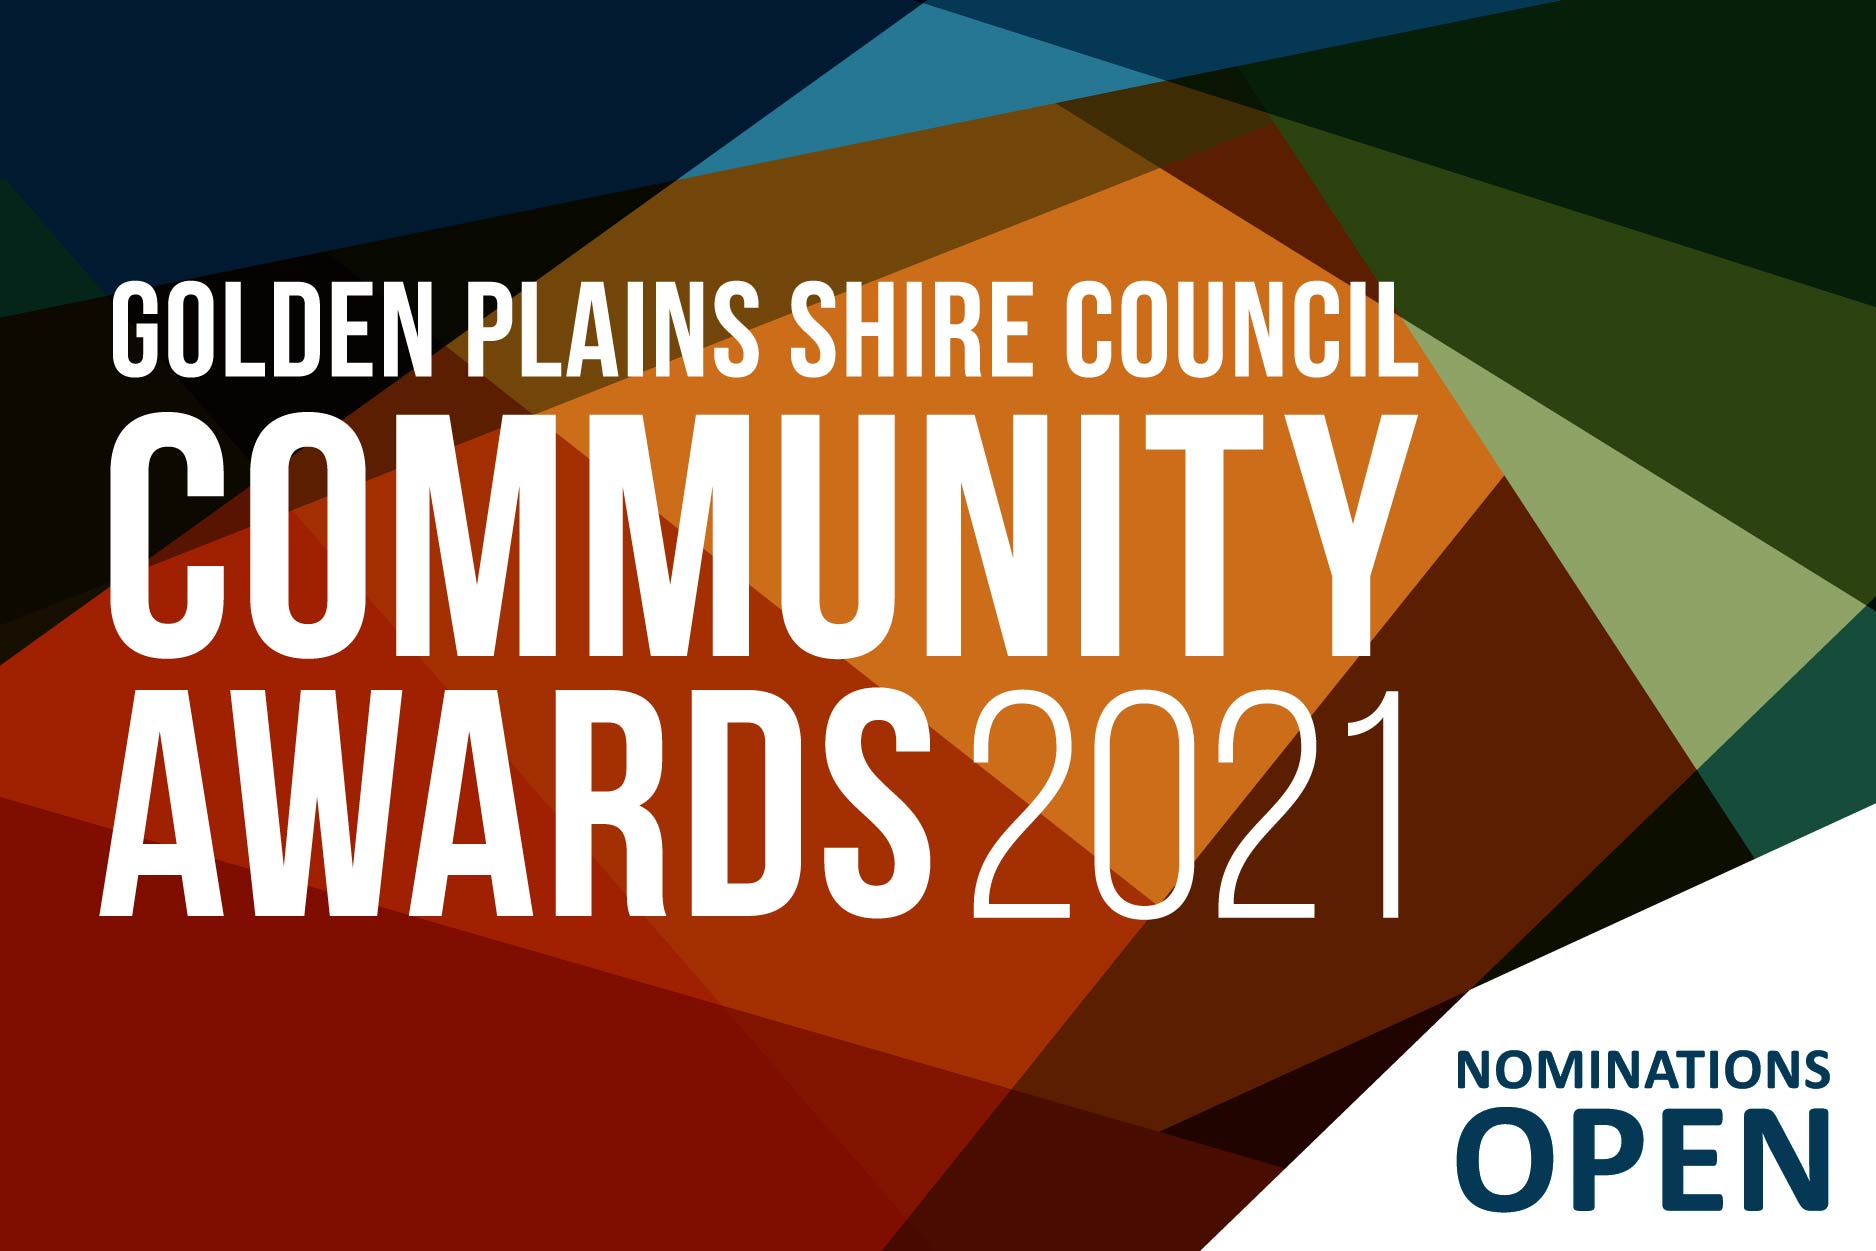 Golden Plains Shire Council Community Awards 2021